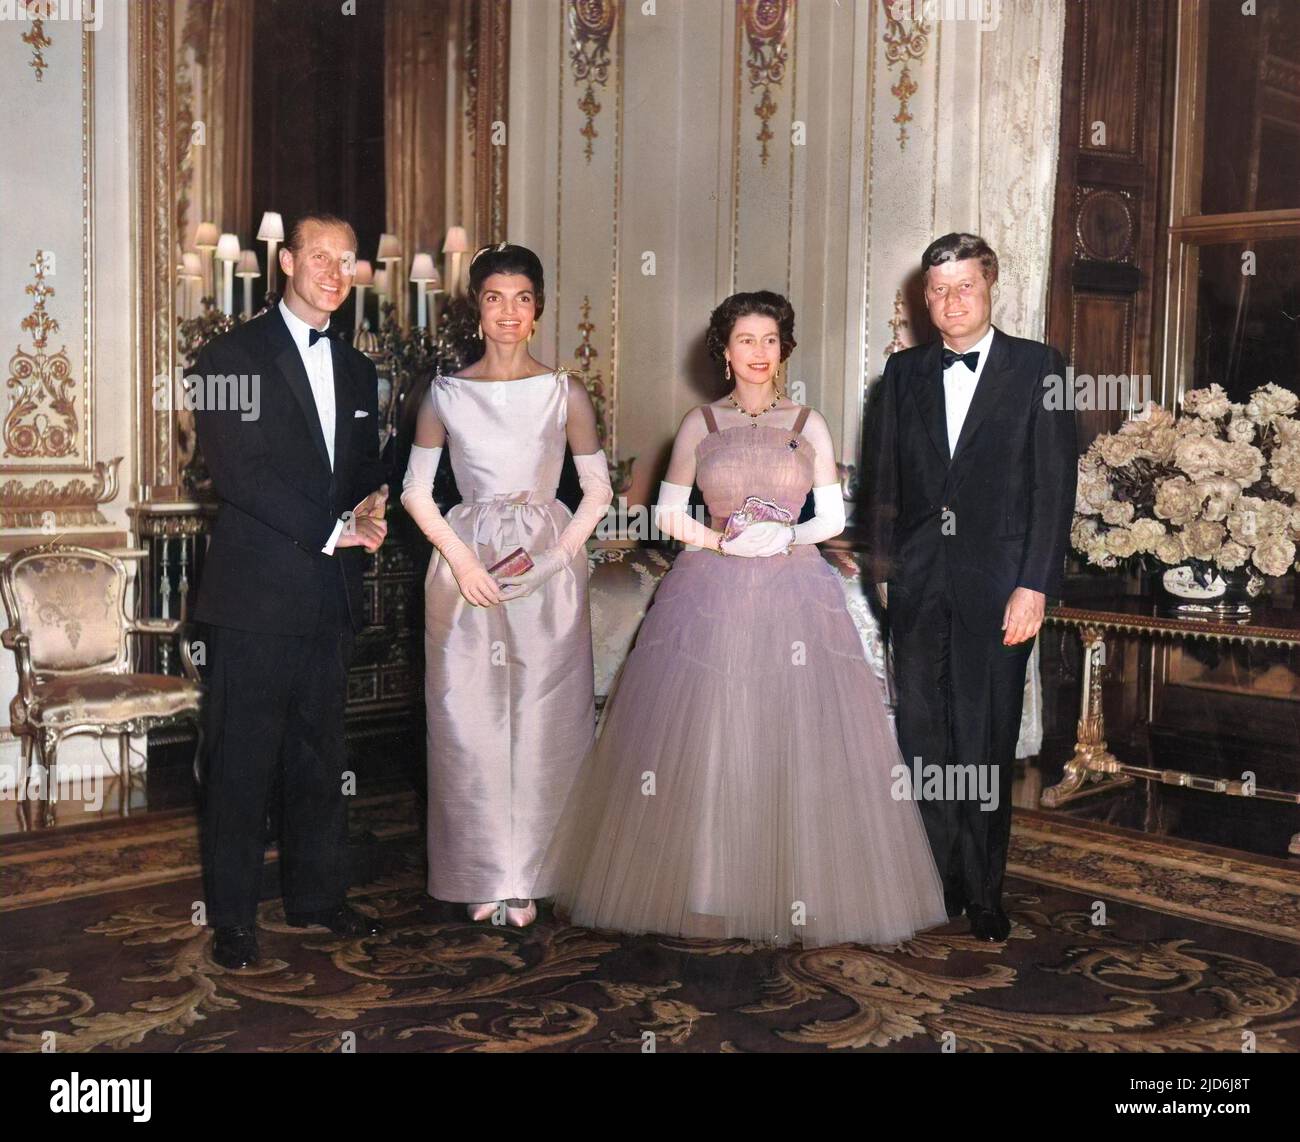 Le président John F Kennedy et son épouse Jackie, photographiés avec la reine Elizabeth II et le prince Philip, duc d'Édimbourg, lors d'un dîner d'État donné au palais de Buckingham lors d'une visite des Kennedys à Londres. Version colorisée de : 10513552 Date: 1961 Banque D'Images